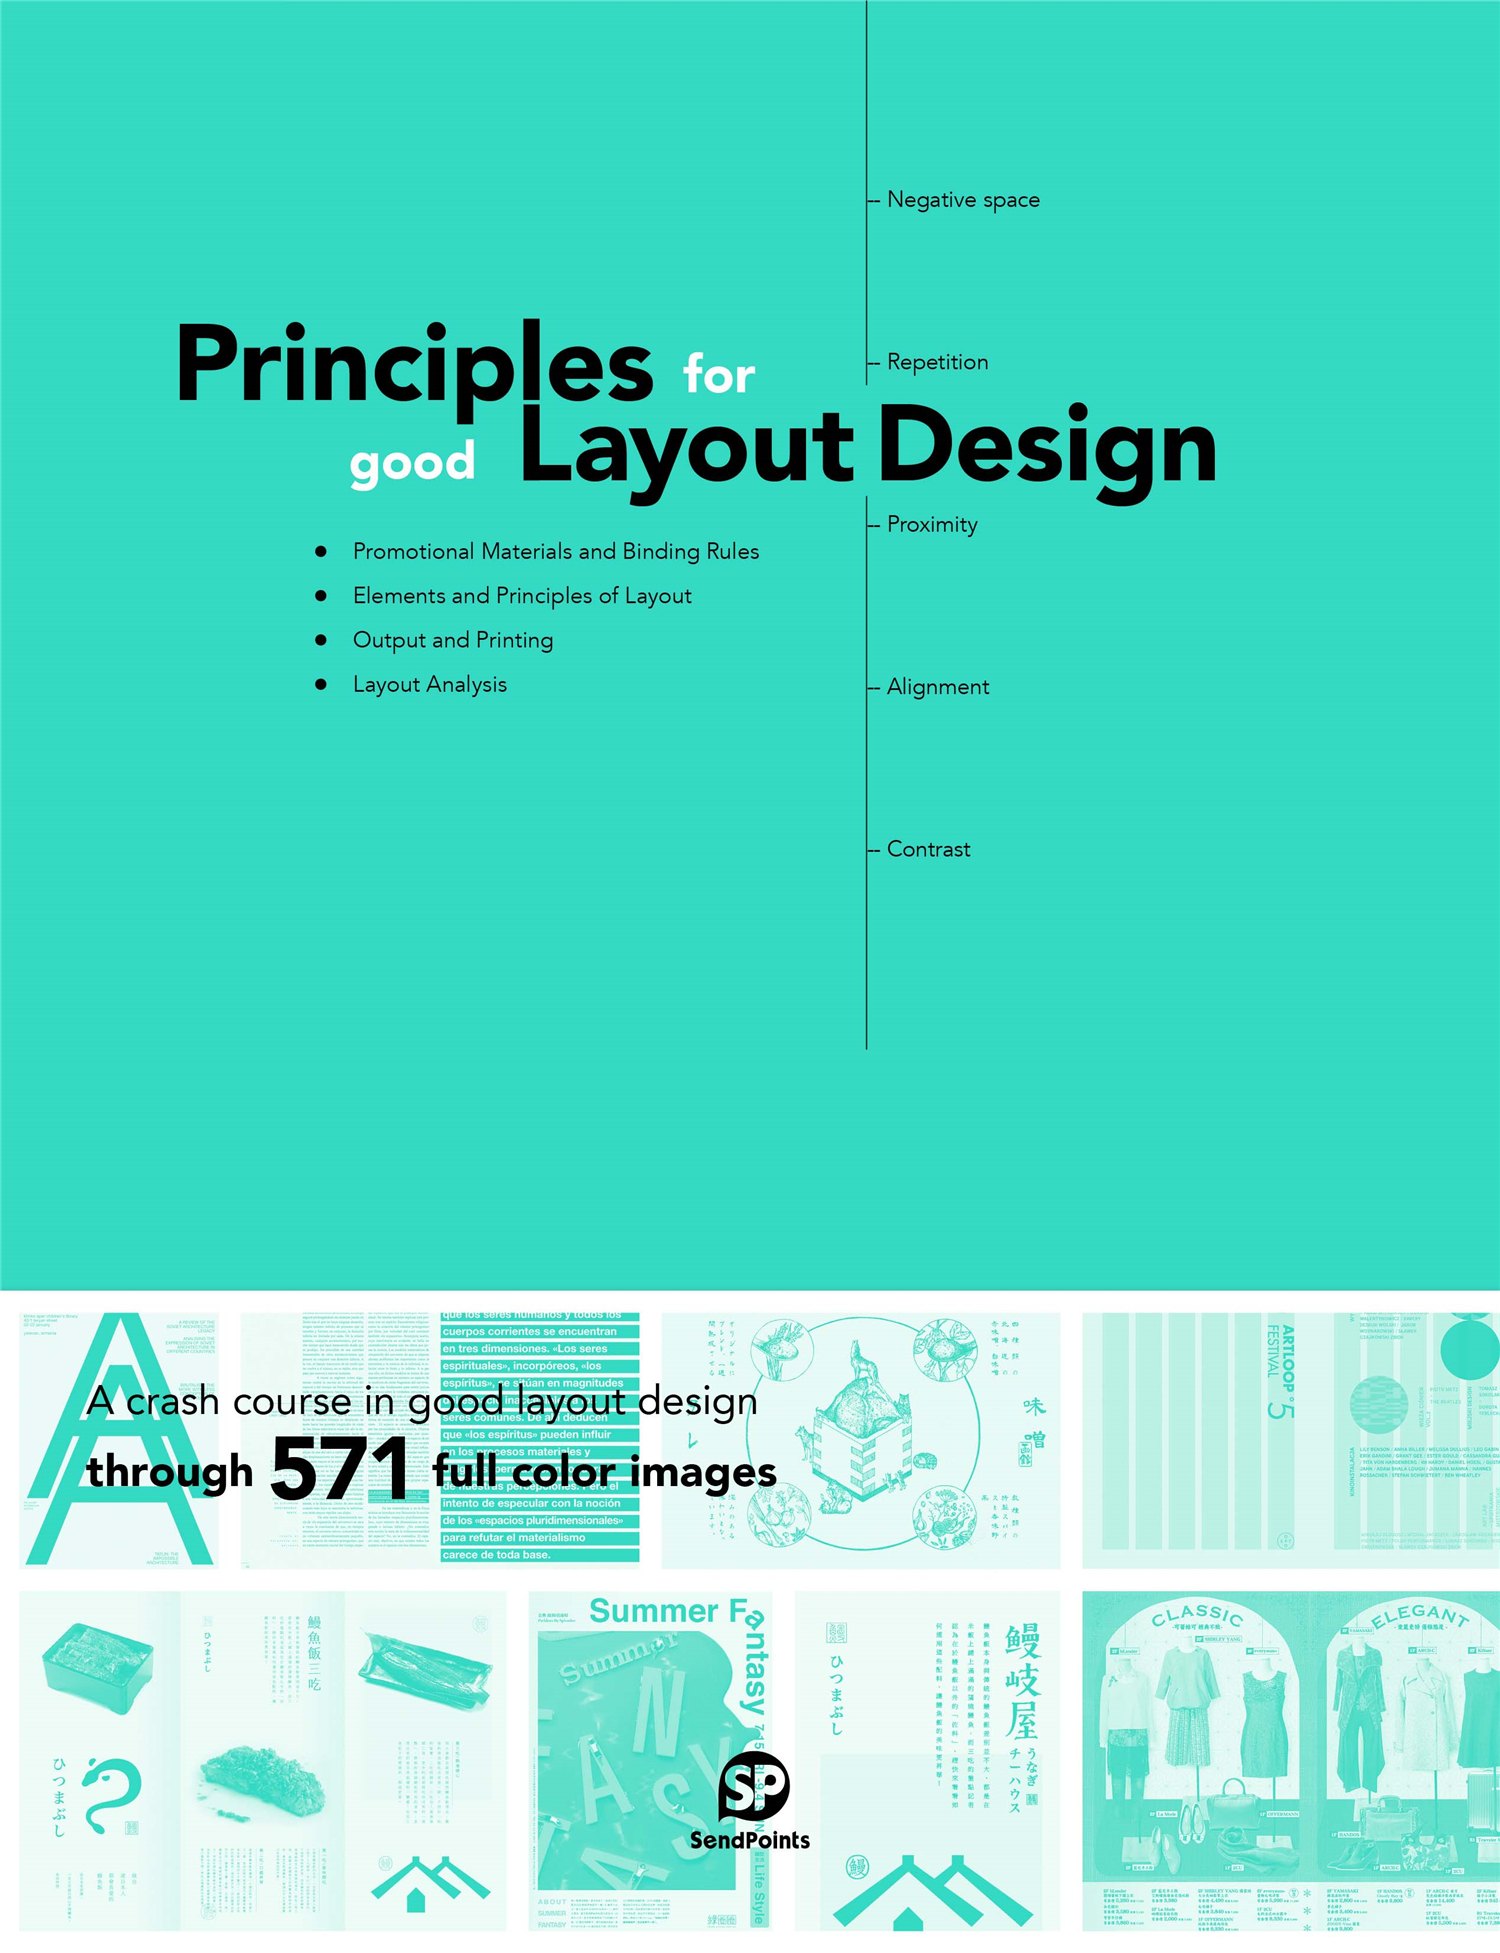 Principles for Good Layout Design 版面中的视觉设计法则